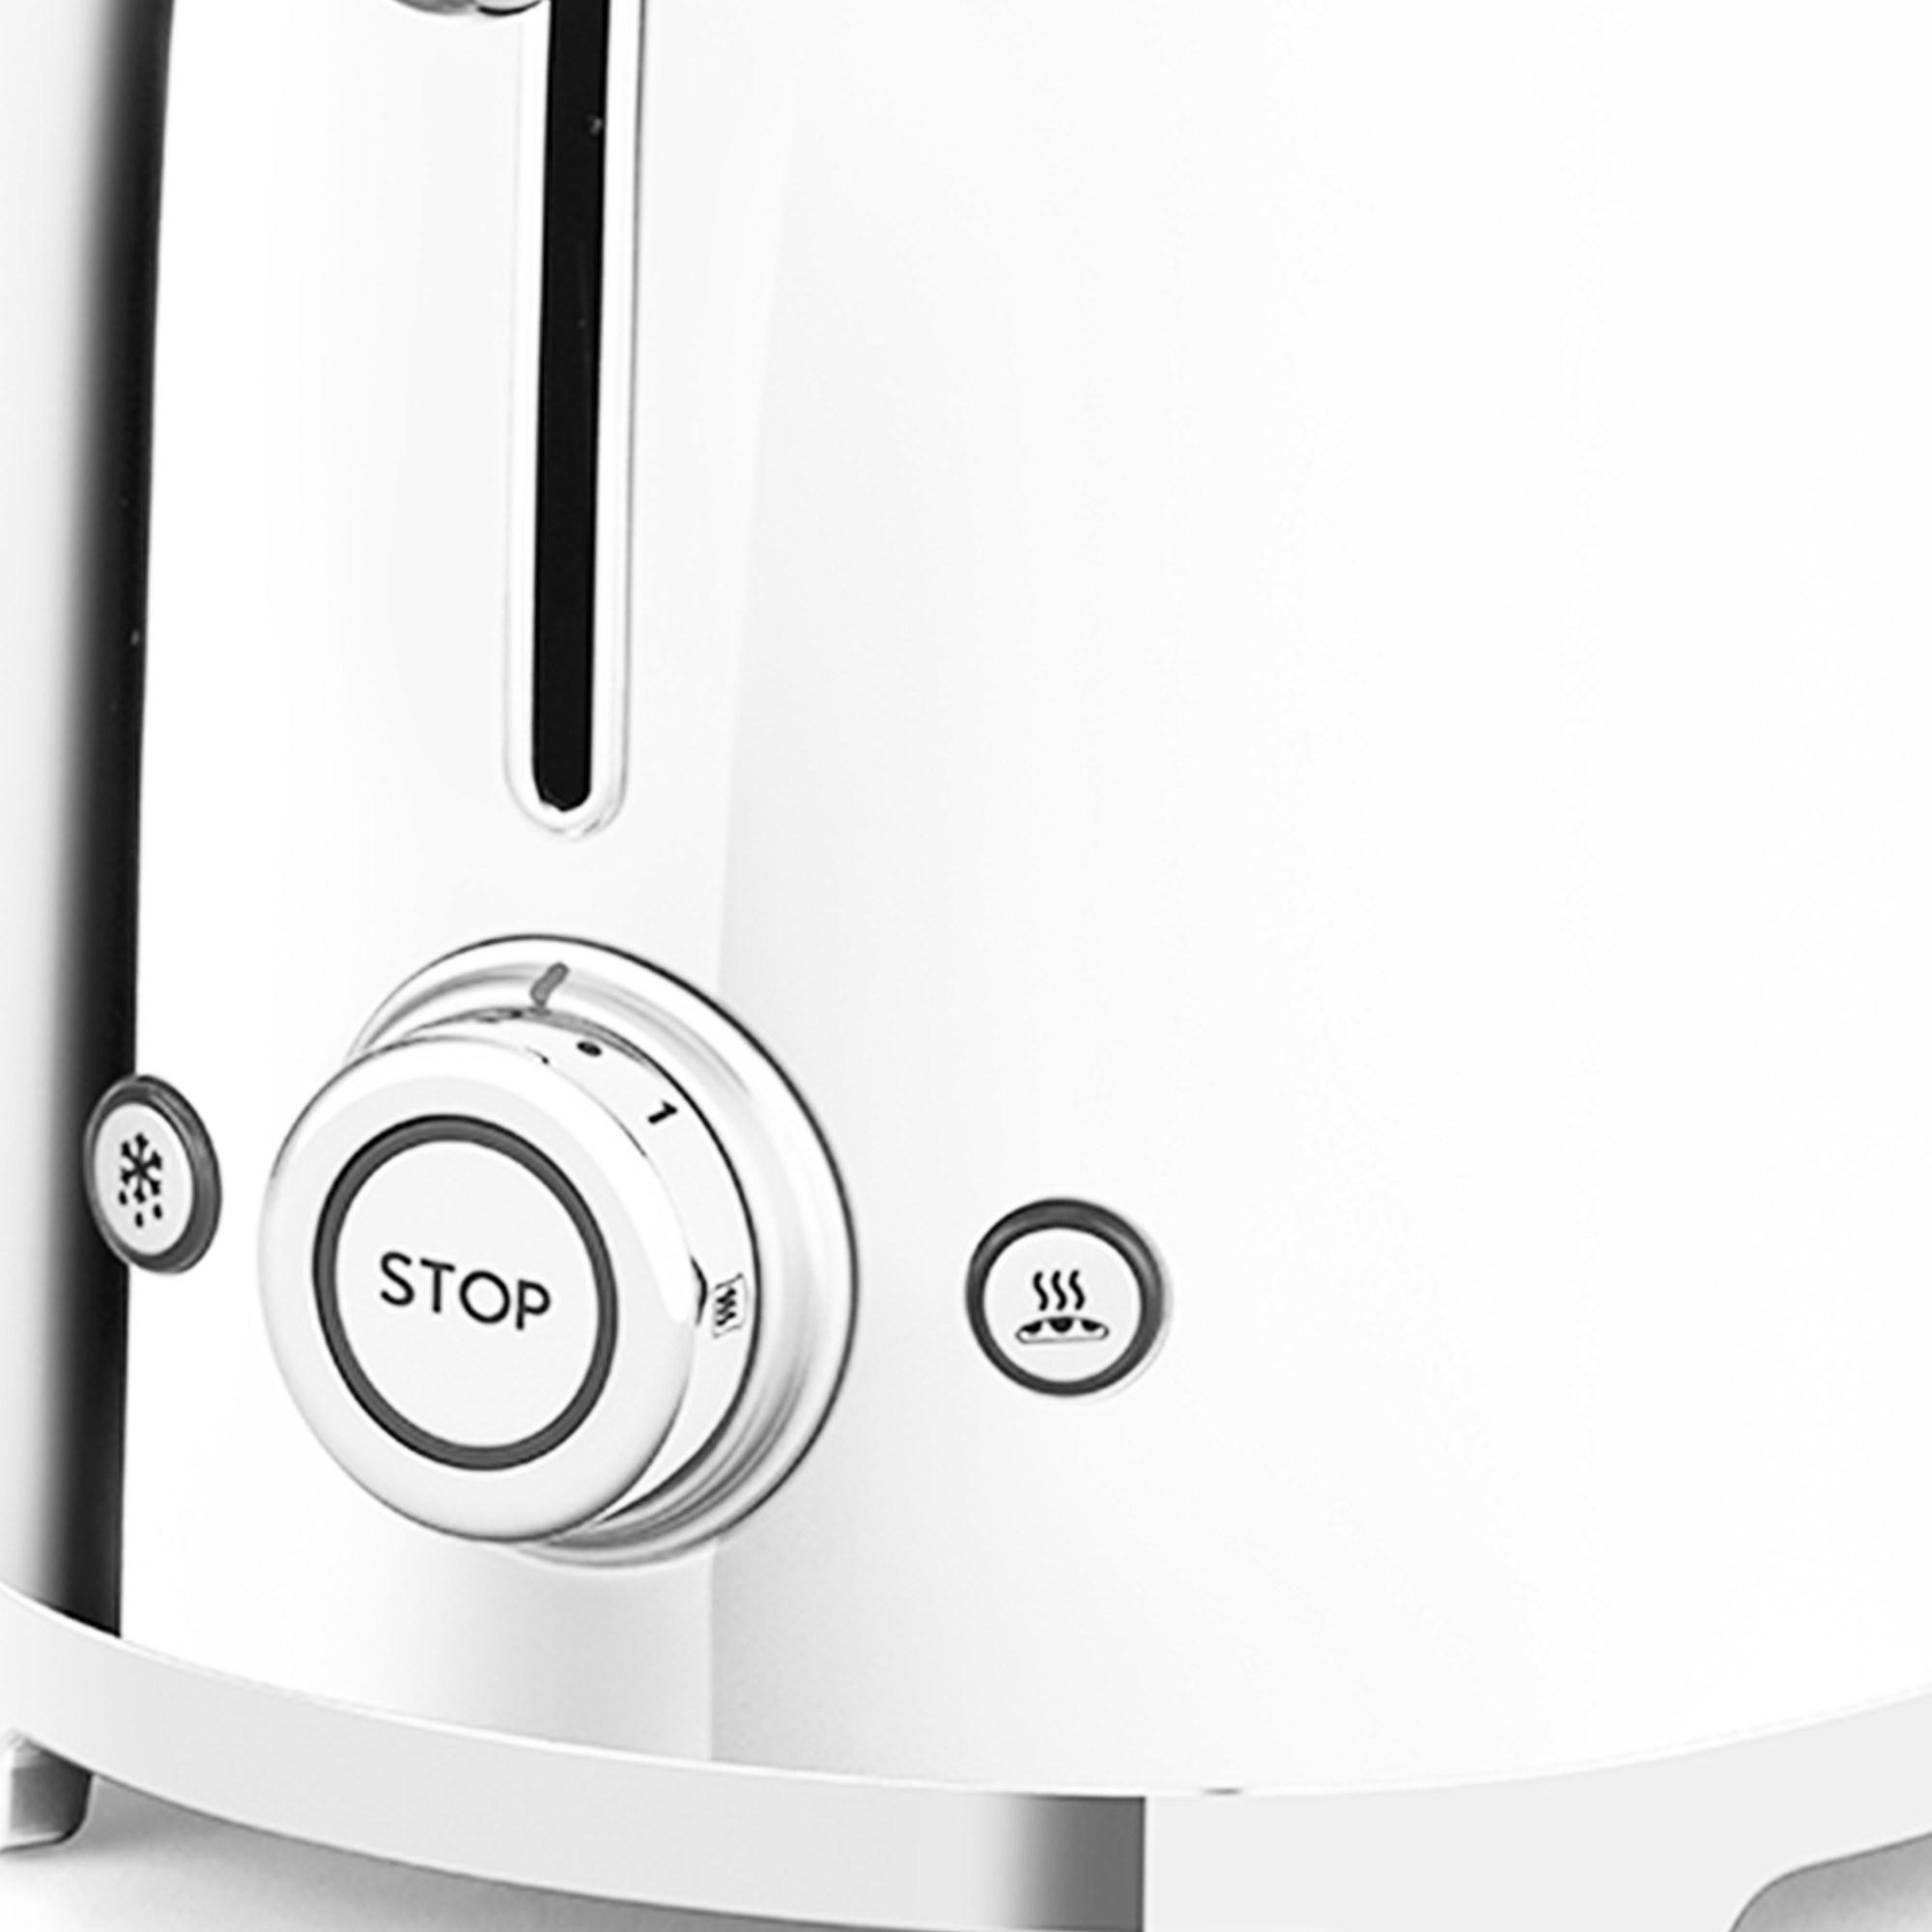 Smeg 50's Retro Style 4 Slice Toaster White Image 5